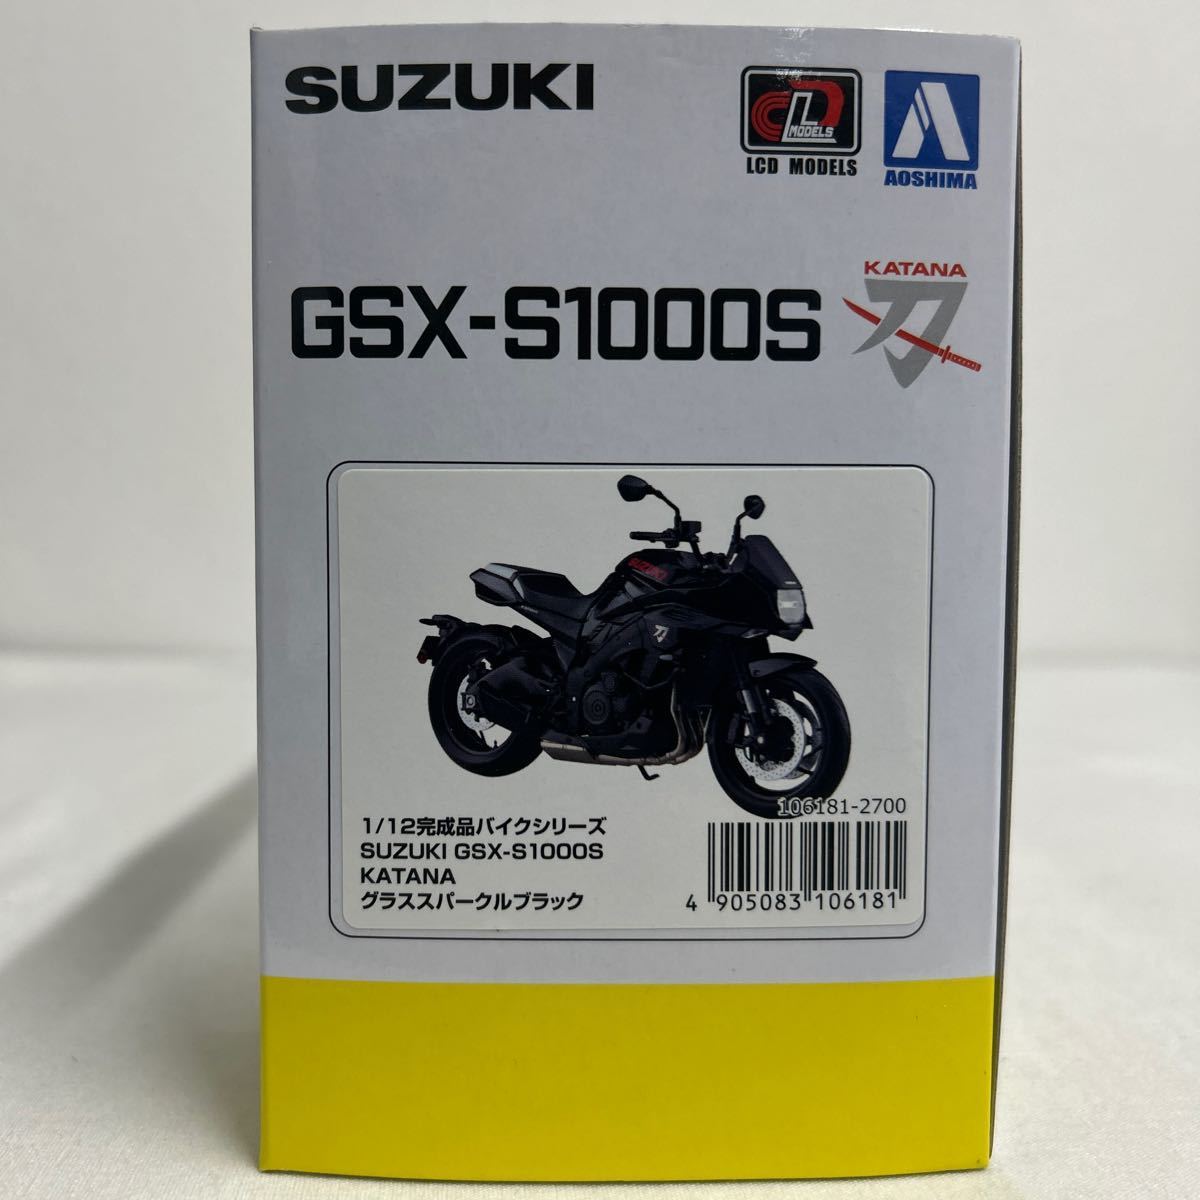 アオシマ 1/12 SUZUKI GSX-S1000S KATANA グラススパークルブラック スズキ カタナ 刀 完成品バイクシリーズ ミニカー モデルカーの画像7